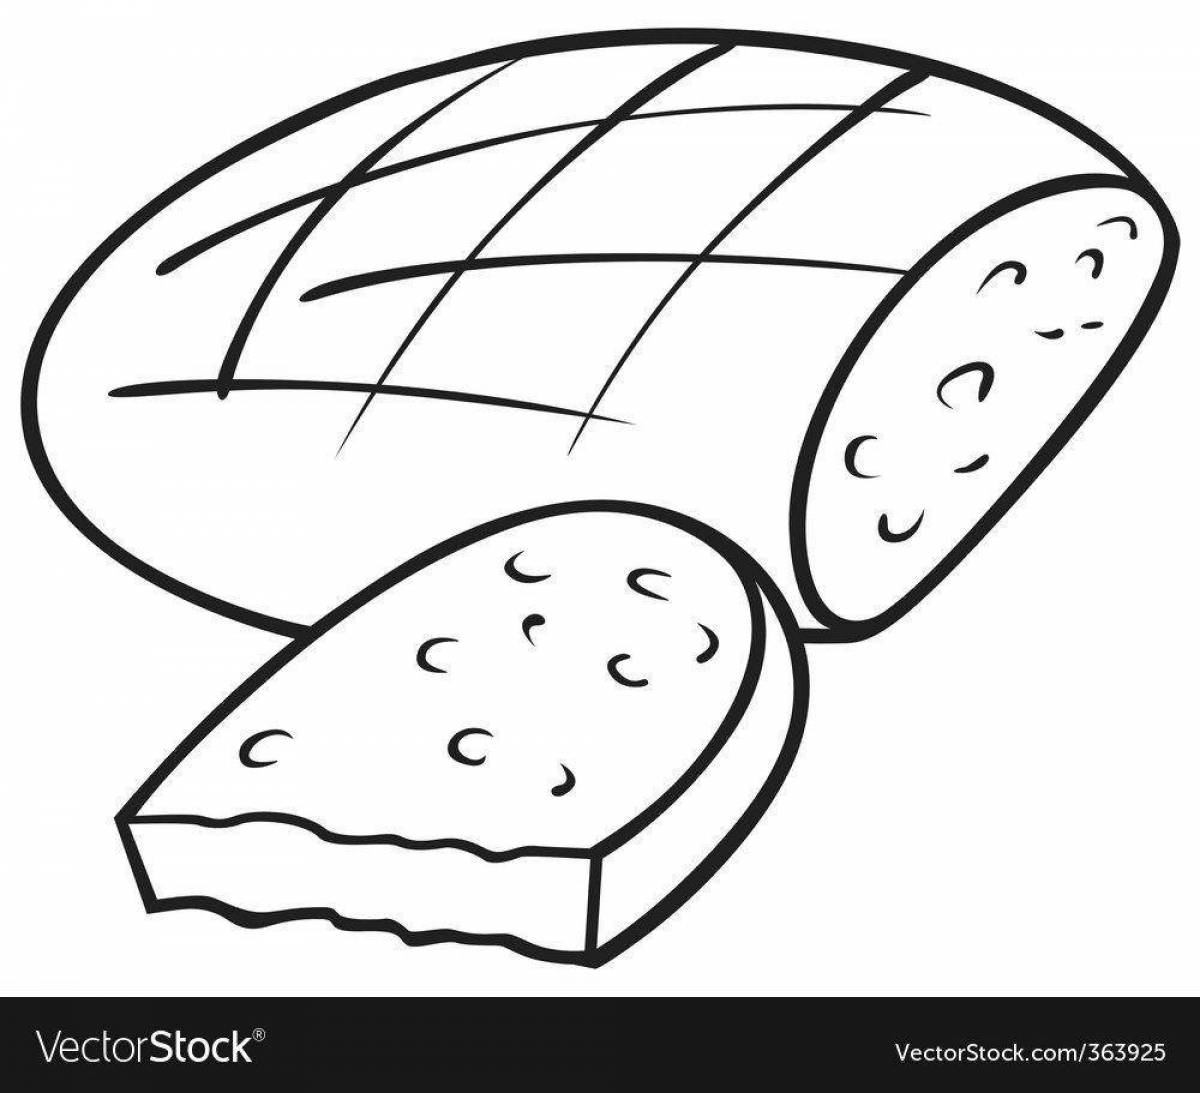 Crunchy coloring slice of bread